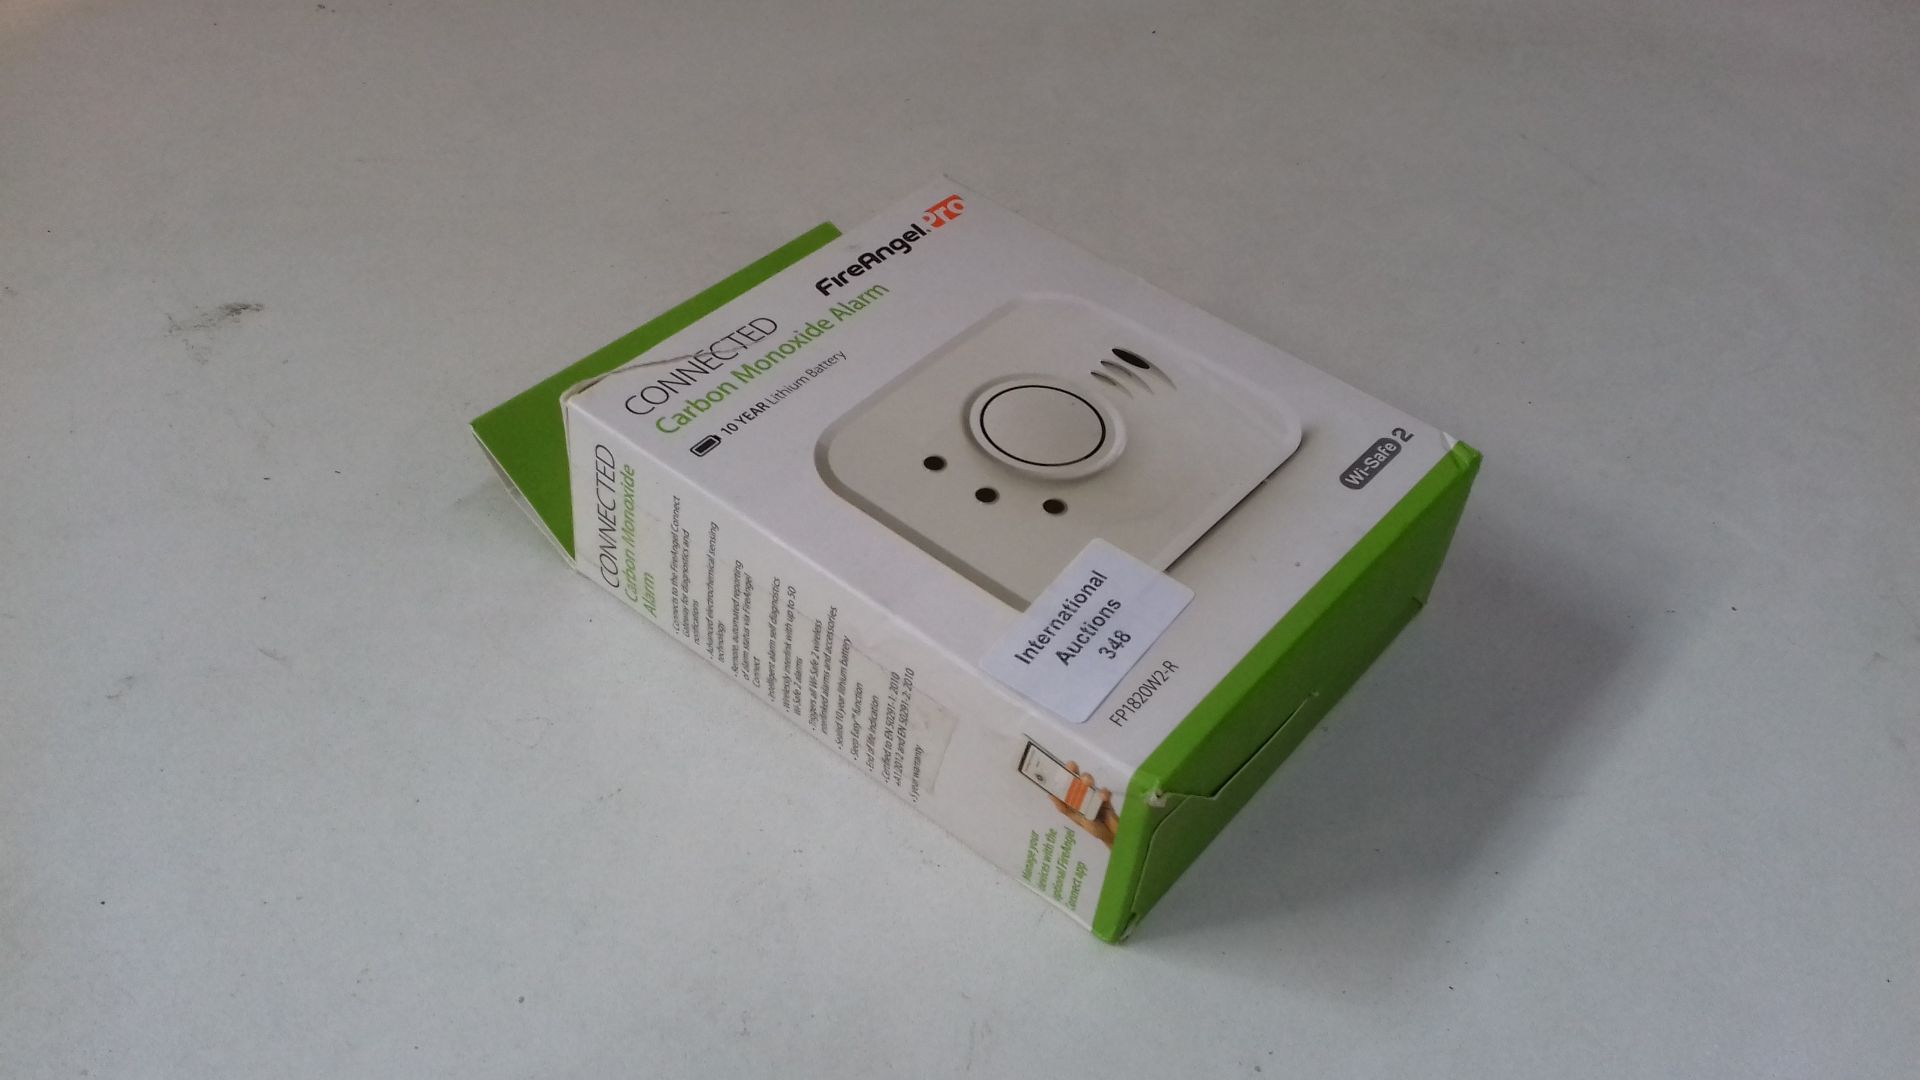 RRP £43.40 FireAngel Pro Connected Smart Carbon Monoxide Alarm - Image 2 of 2